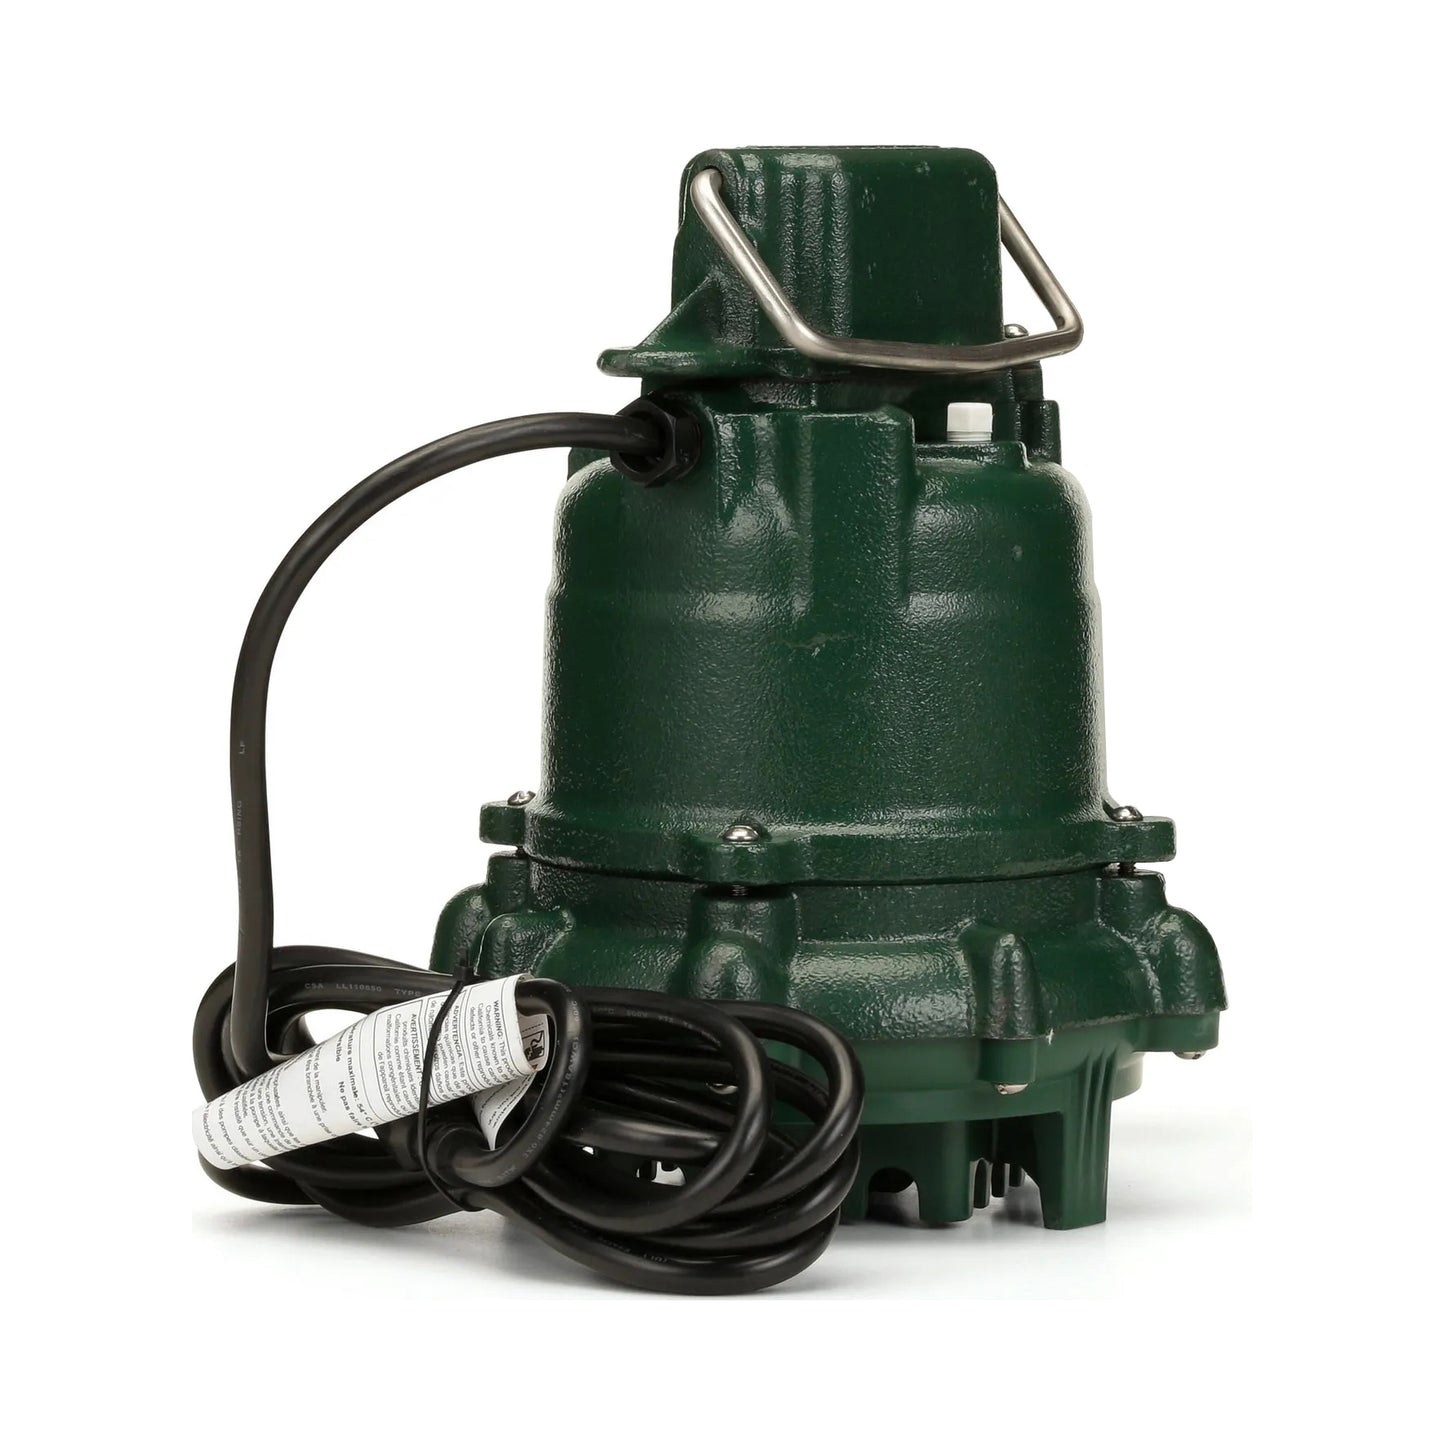 53-0002 - N53 Series Non-Automatic Cast Iron Sump Pump, 115V, 1/3 HP